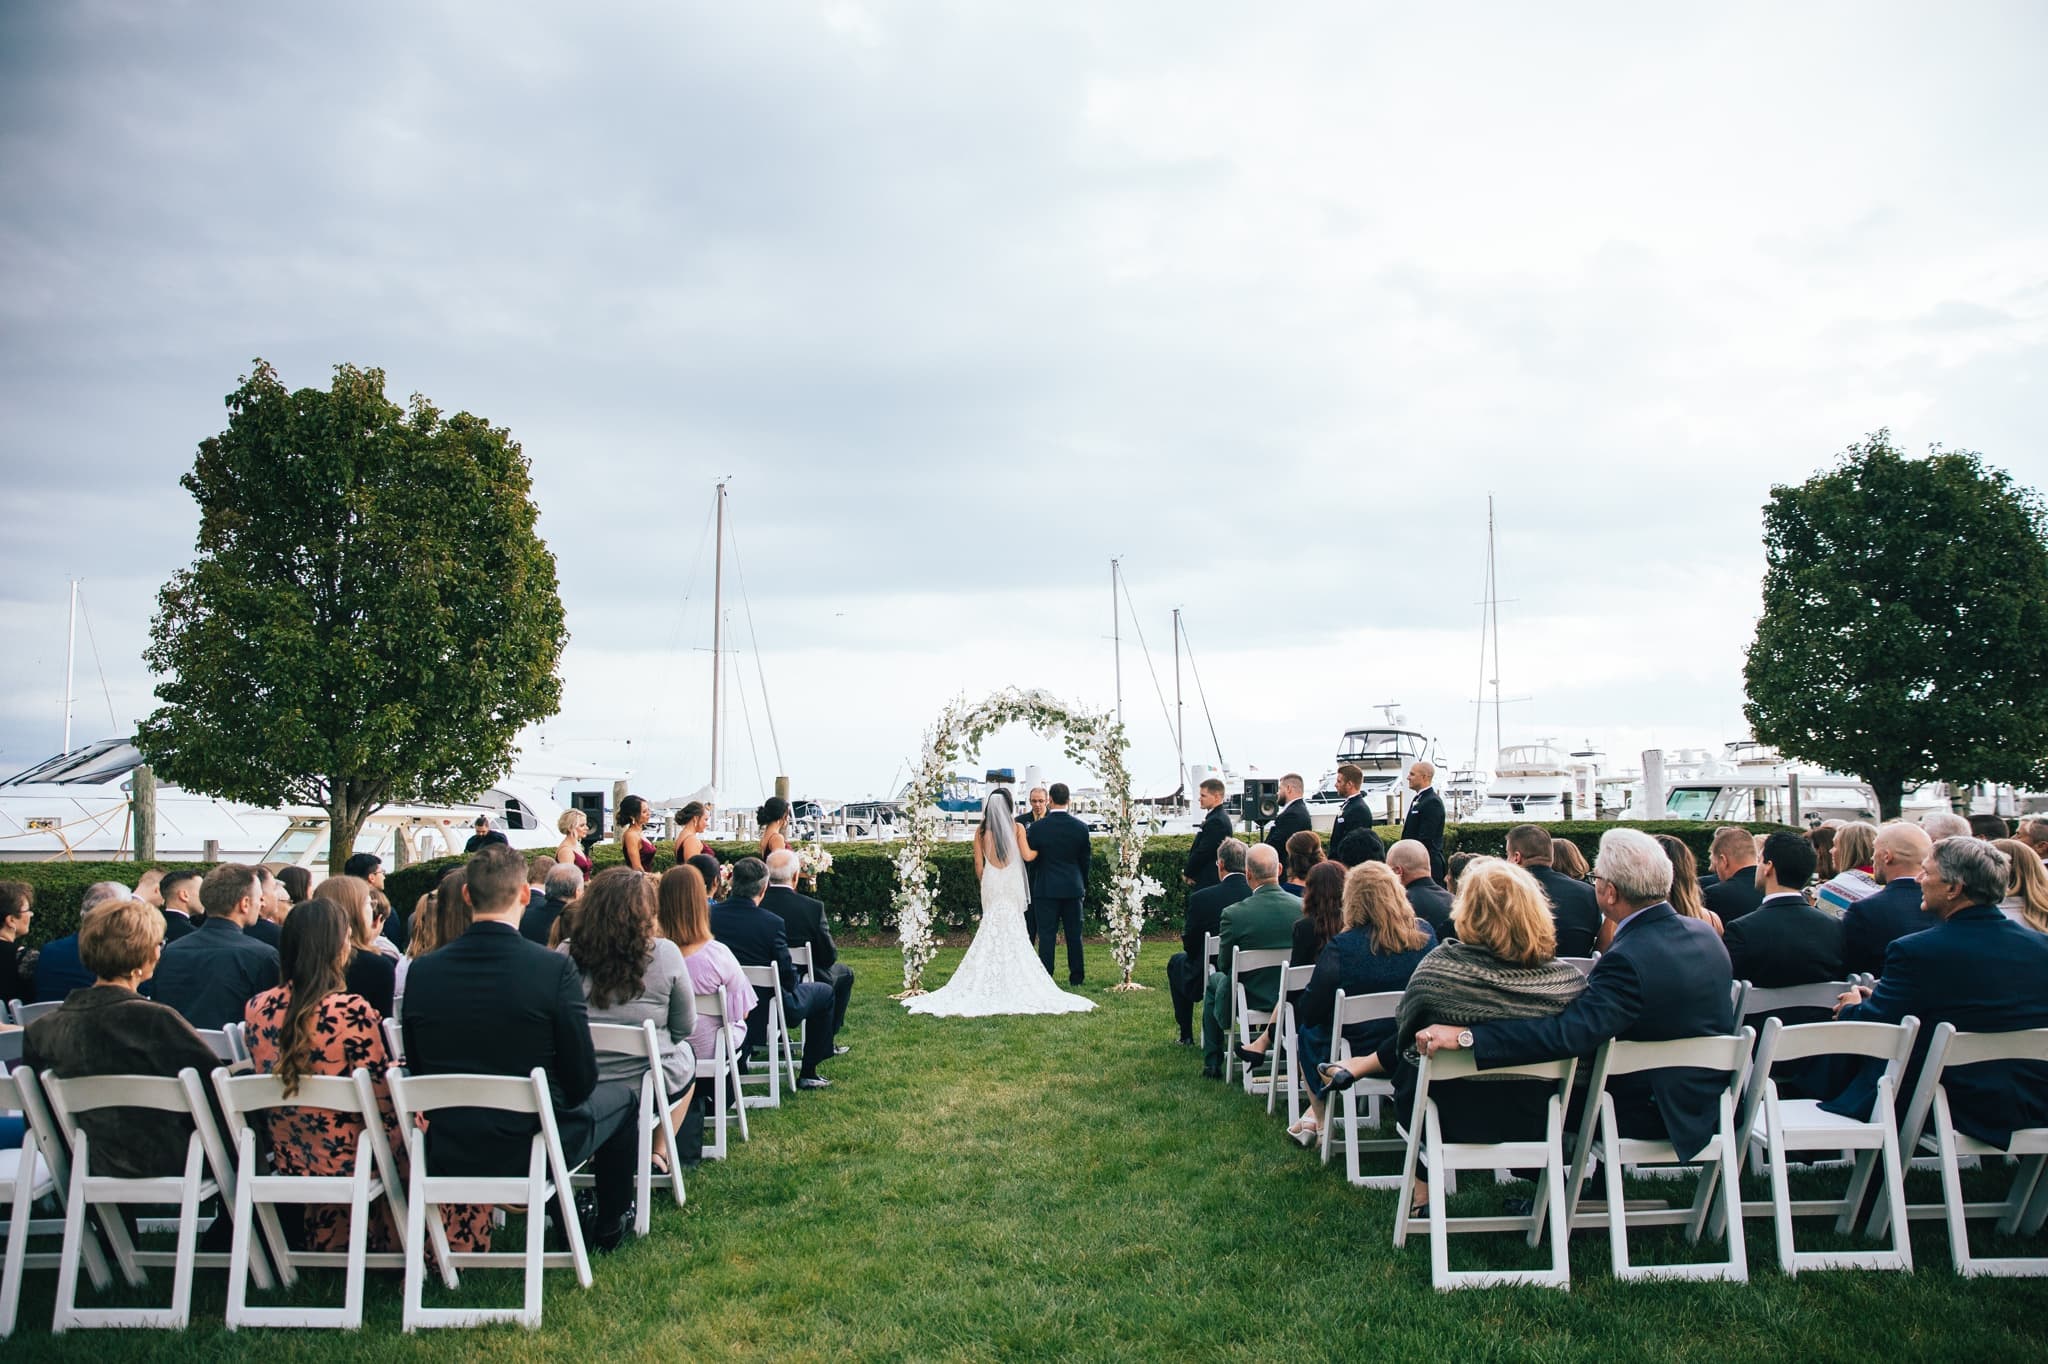 grosse point yacht club wedding ceremony